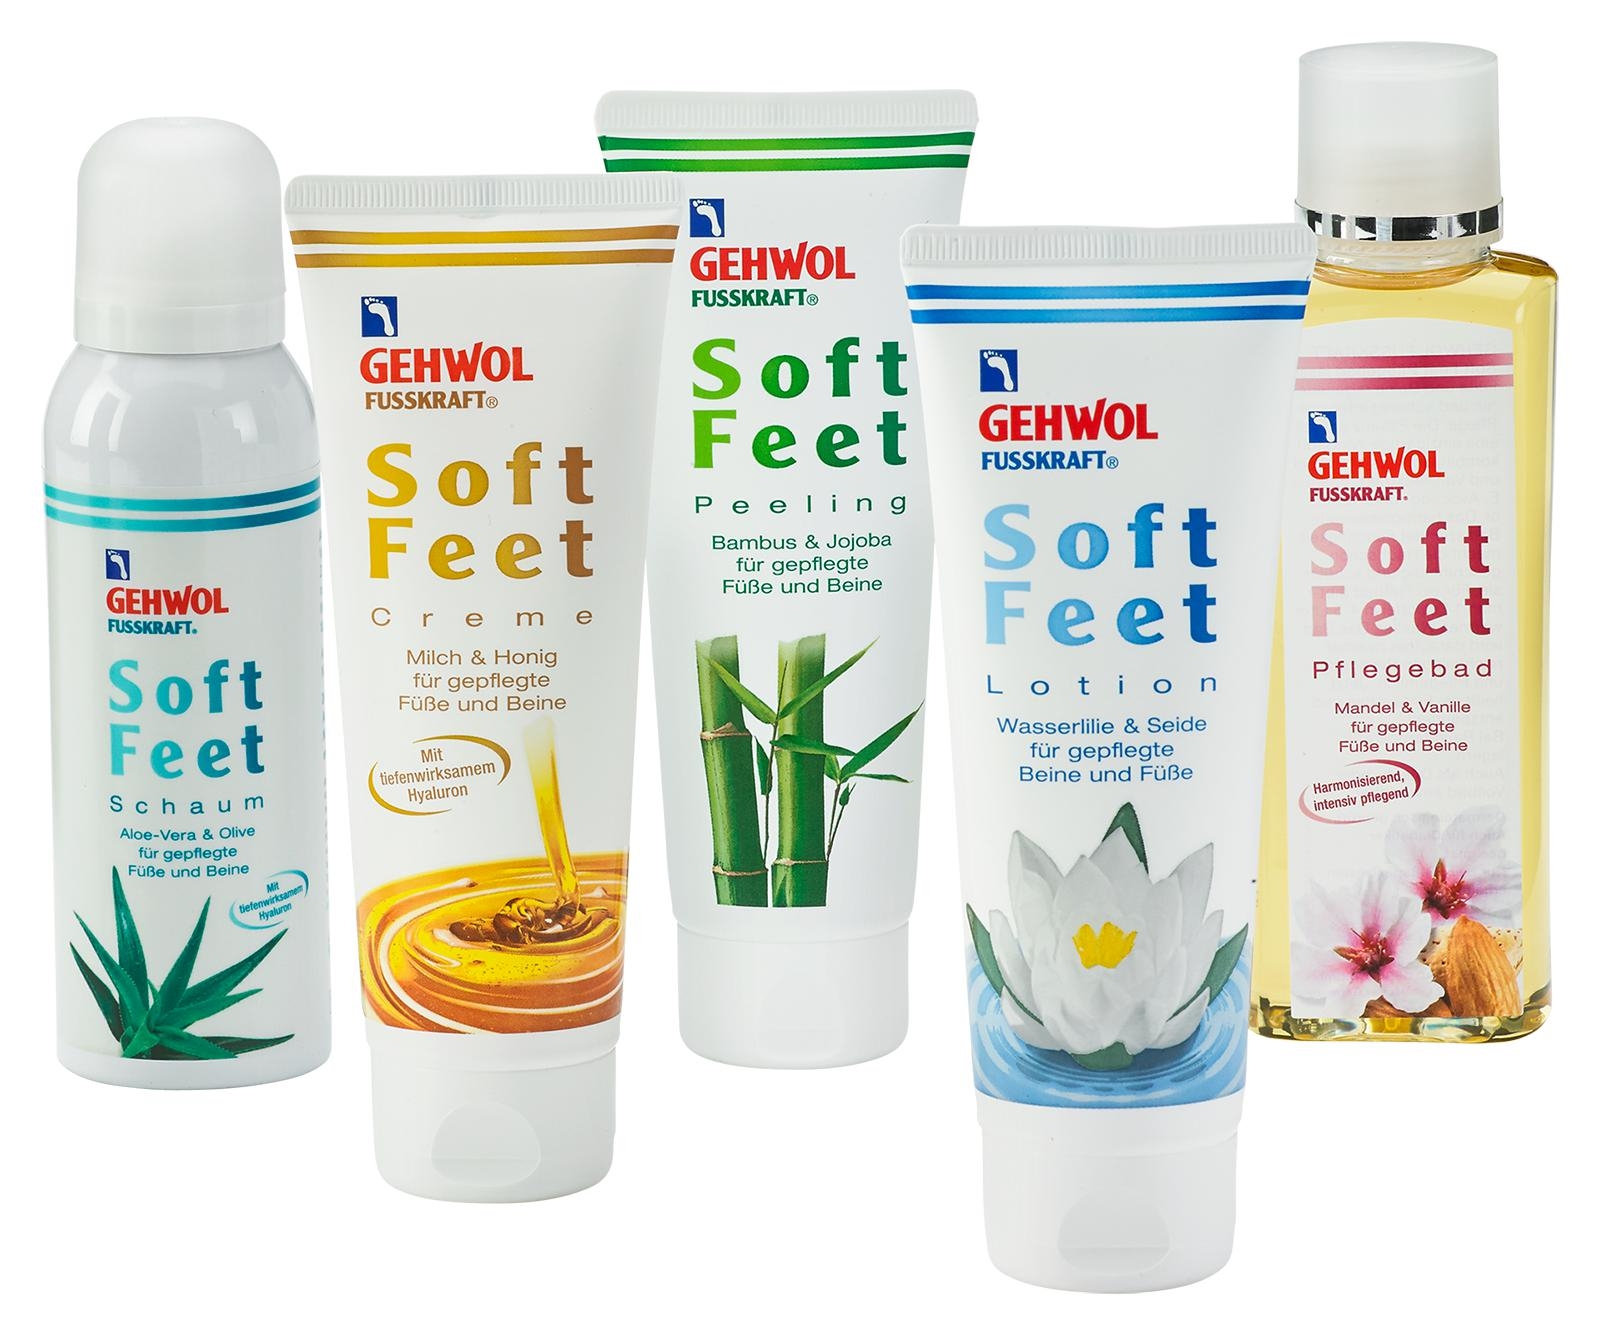 GEHWOL FUSSKRAFT Soft Feet Creme mit Milch & Honig 125 ml